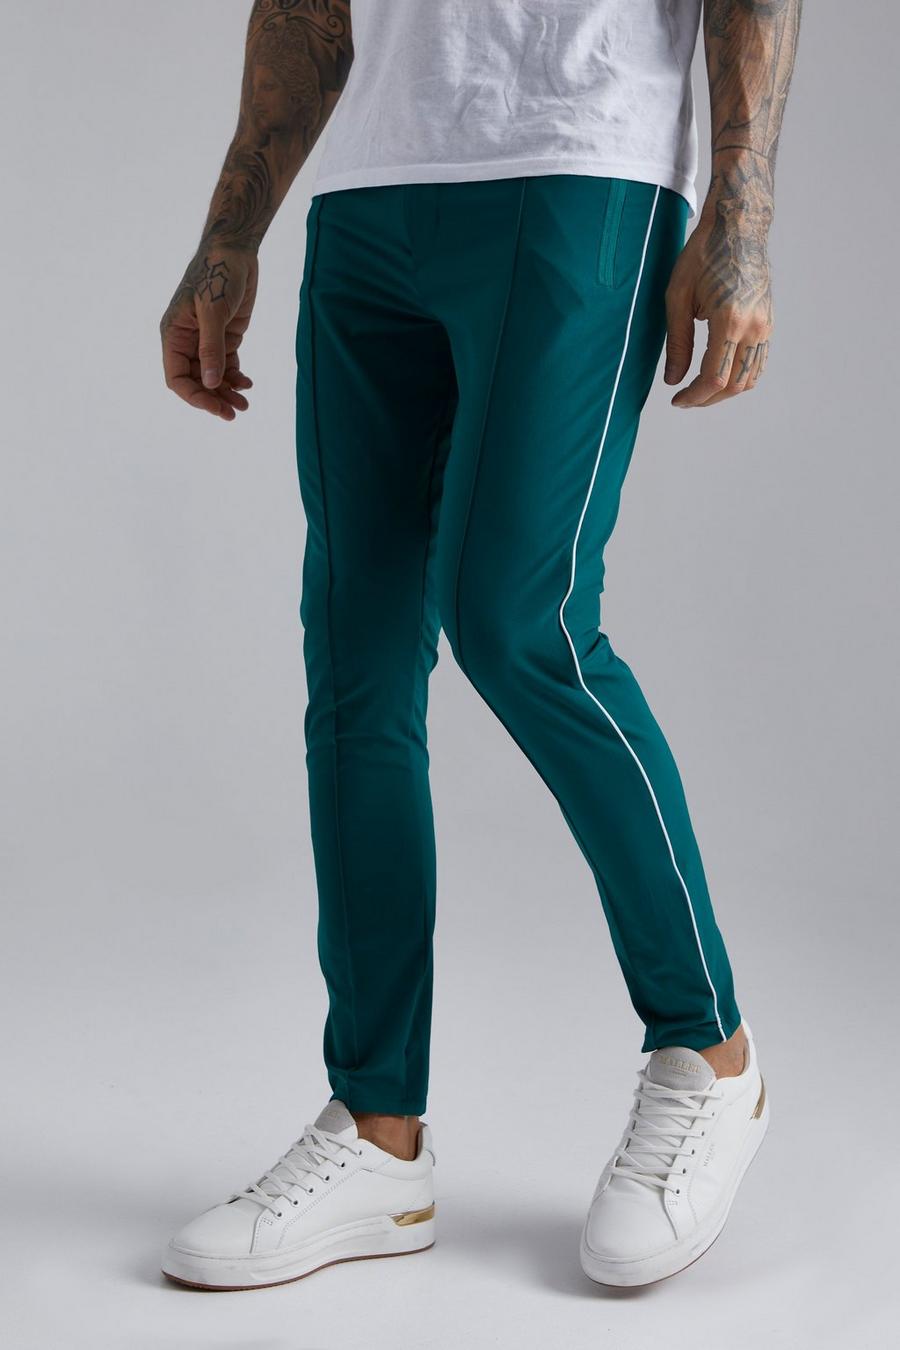 Pantaloni Slim Fit in Stretch tecnico con cordoncino, Forest verde